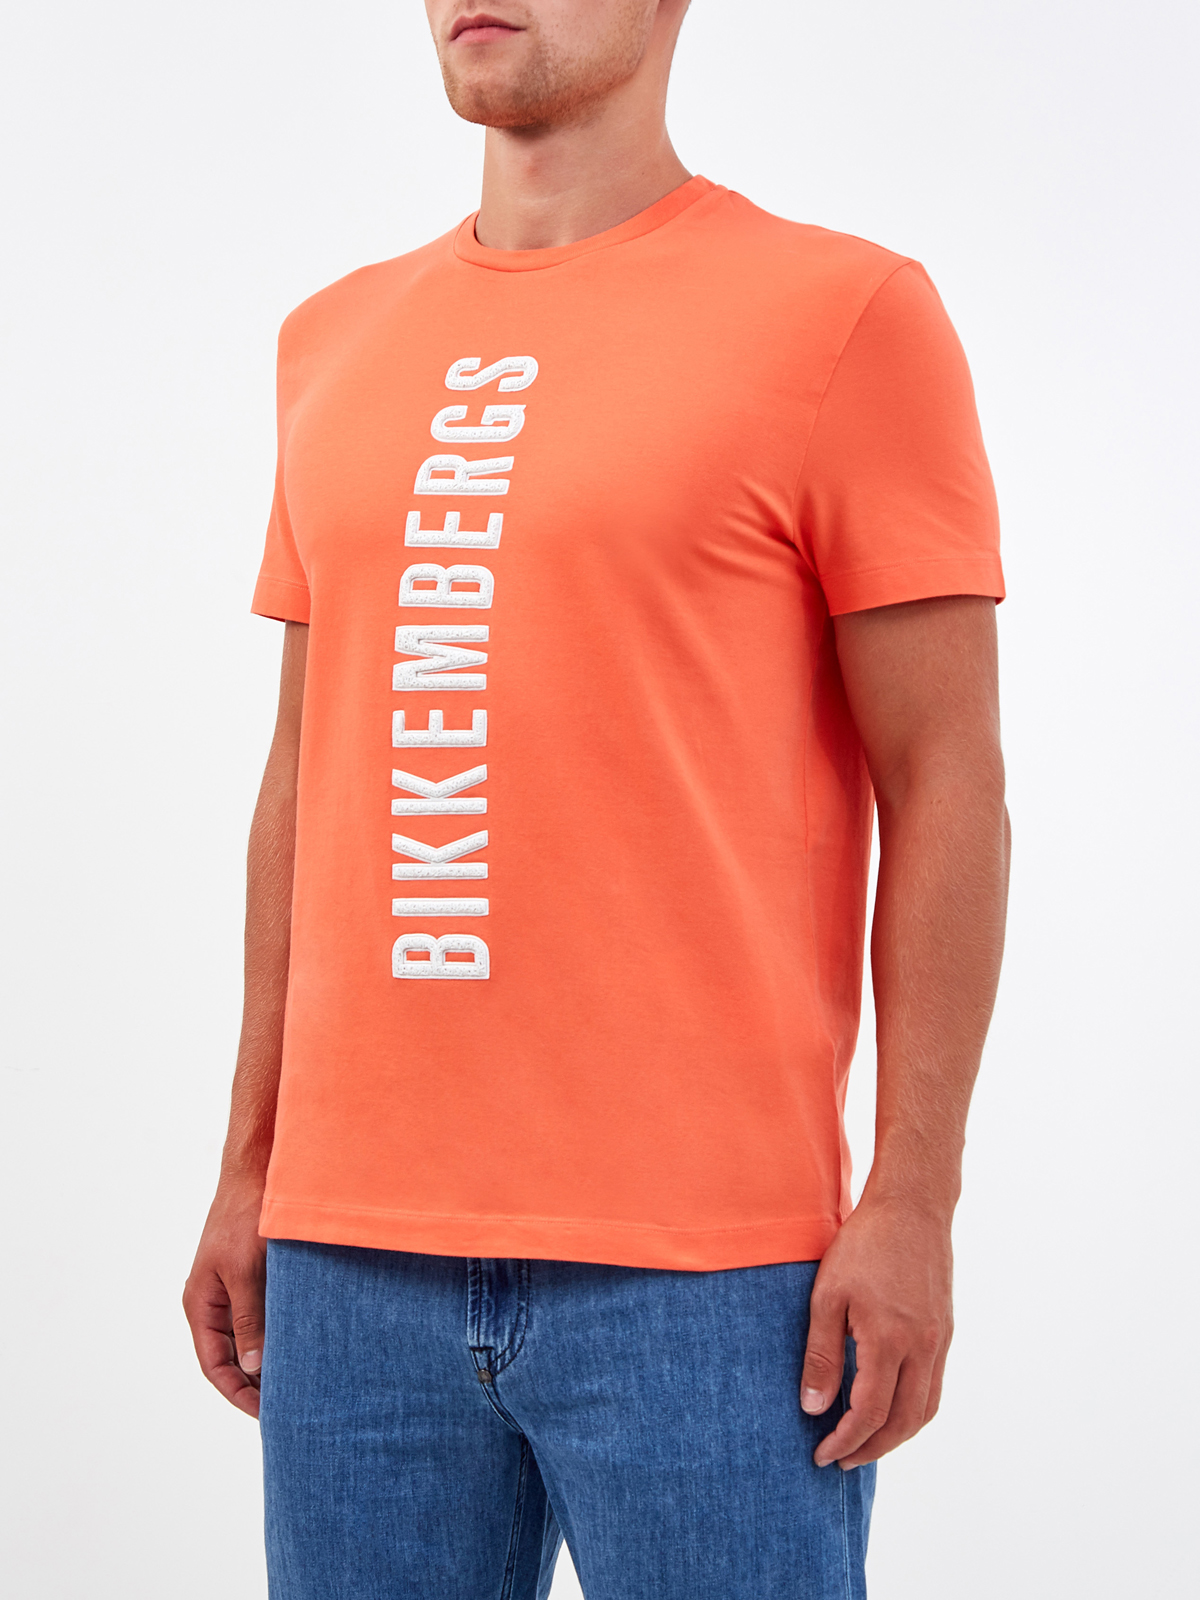 Яркая футболка из хлопка с фактурным логотипом BIKKEMBERGS, цвет оранжевый, размер M;2XL;3XL - фото 3